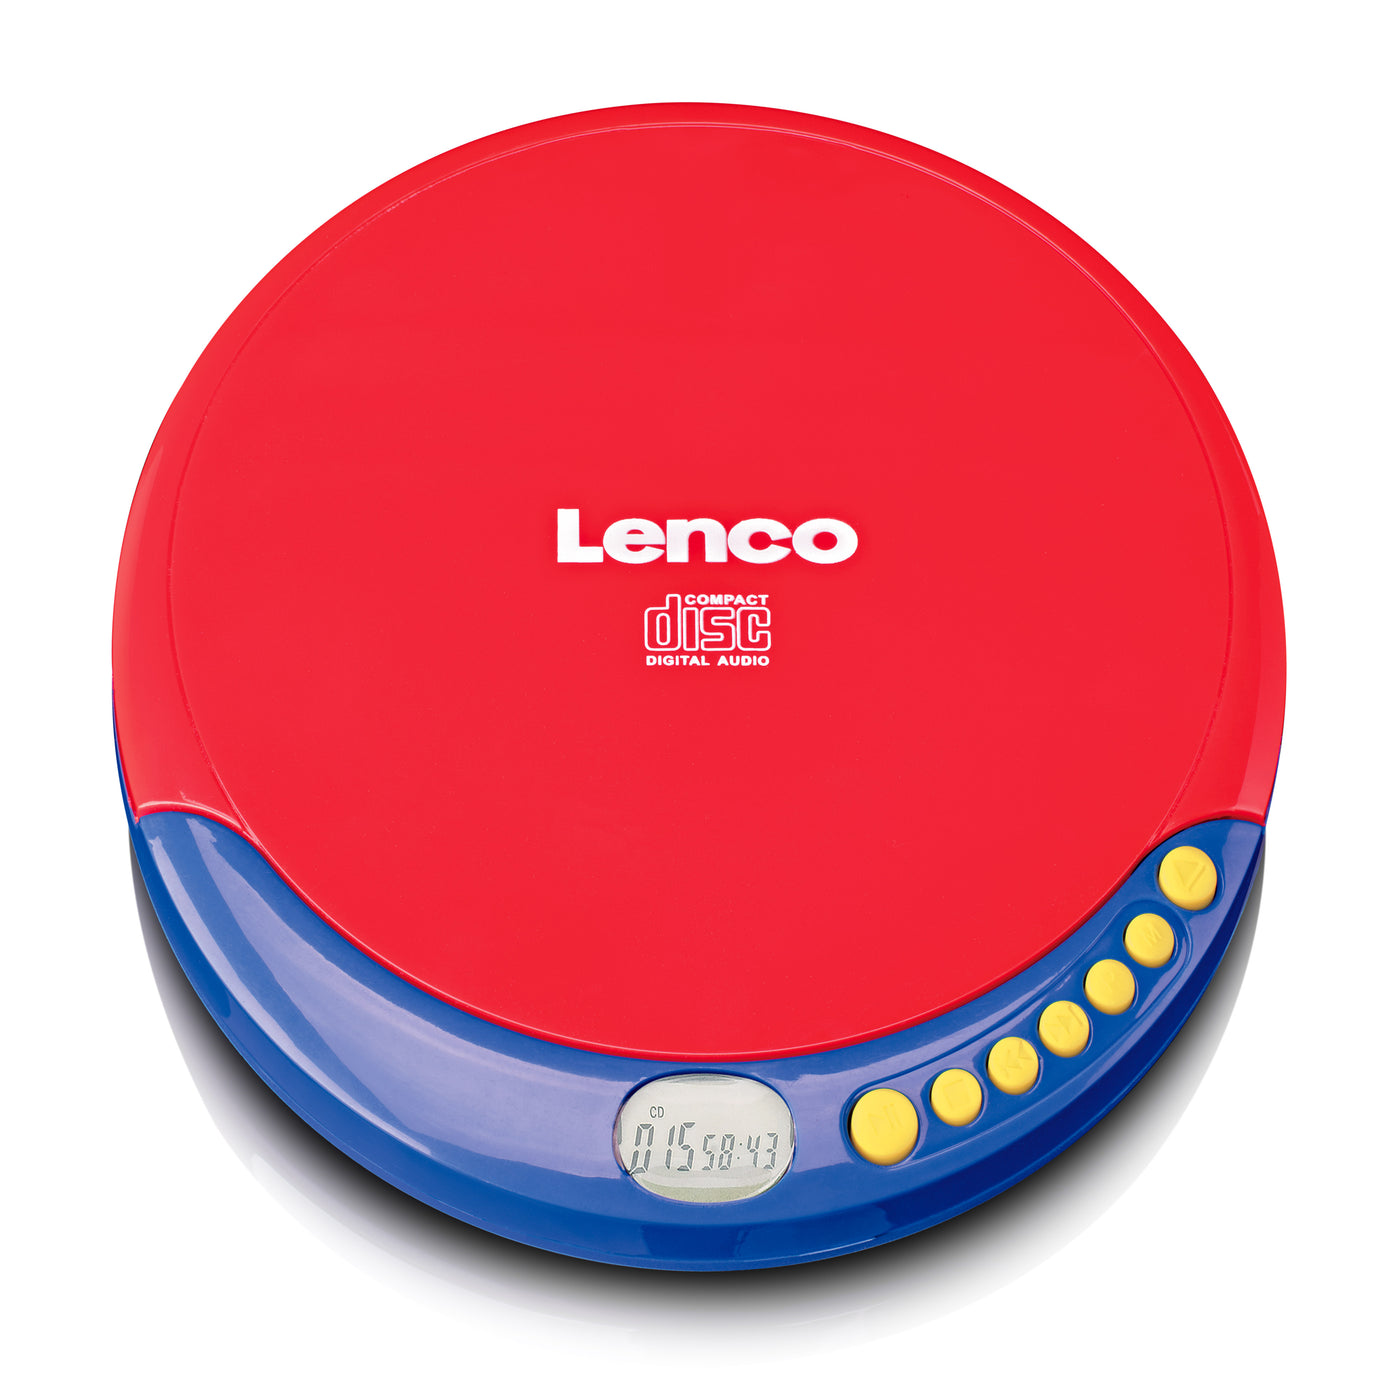 Lenco CD-021KIDS - Tragbarer CD-Player für Kinder mit Kopfhörer, wiederaufladbaren Batterien und integriertem Schallschutz - Mehrfarbig